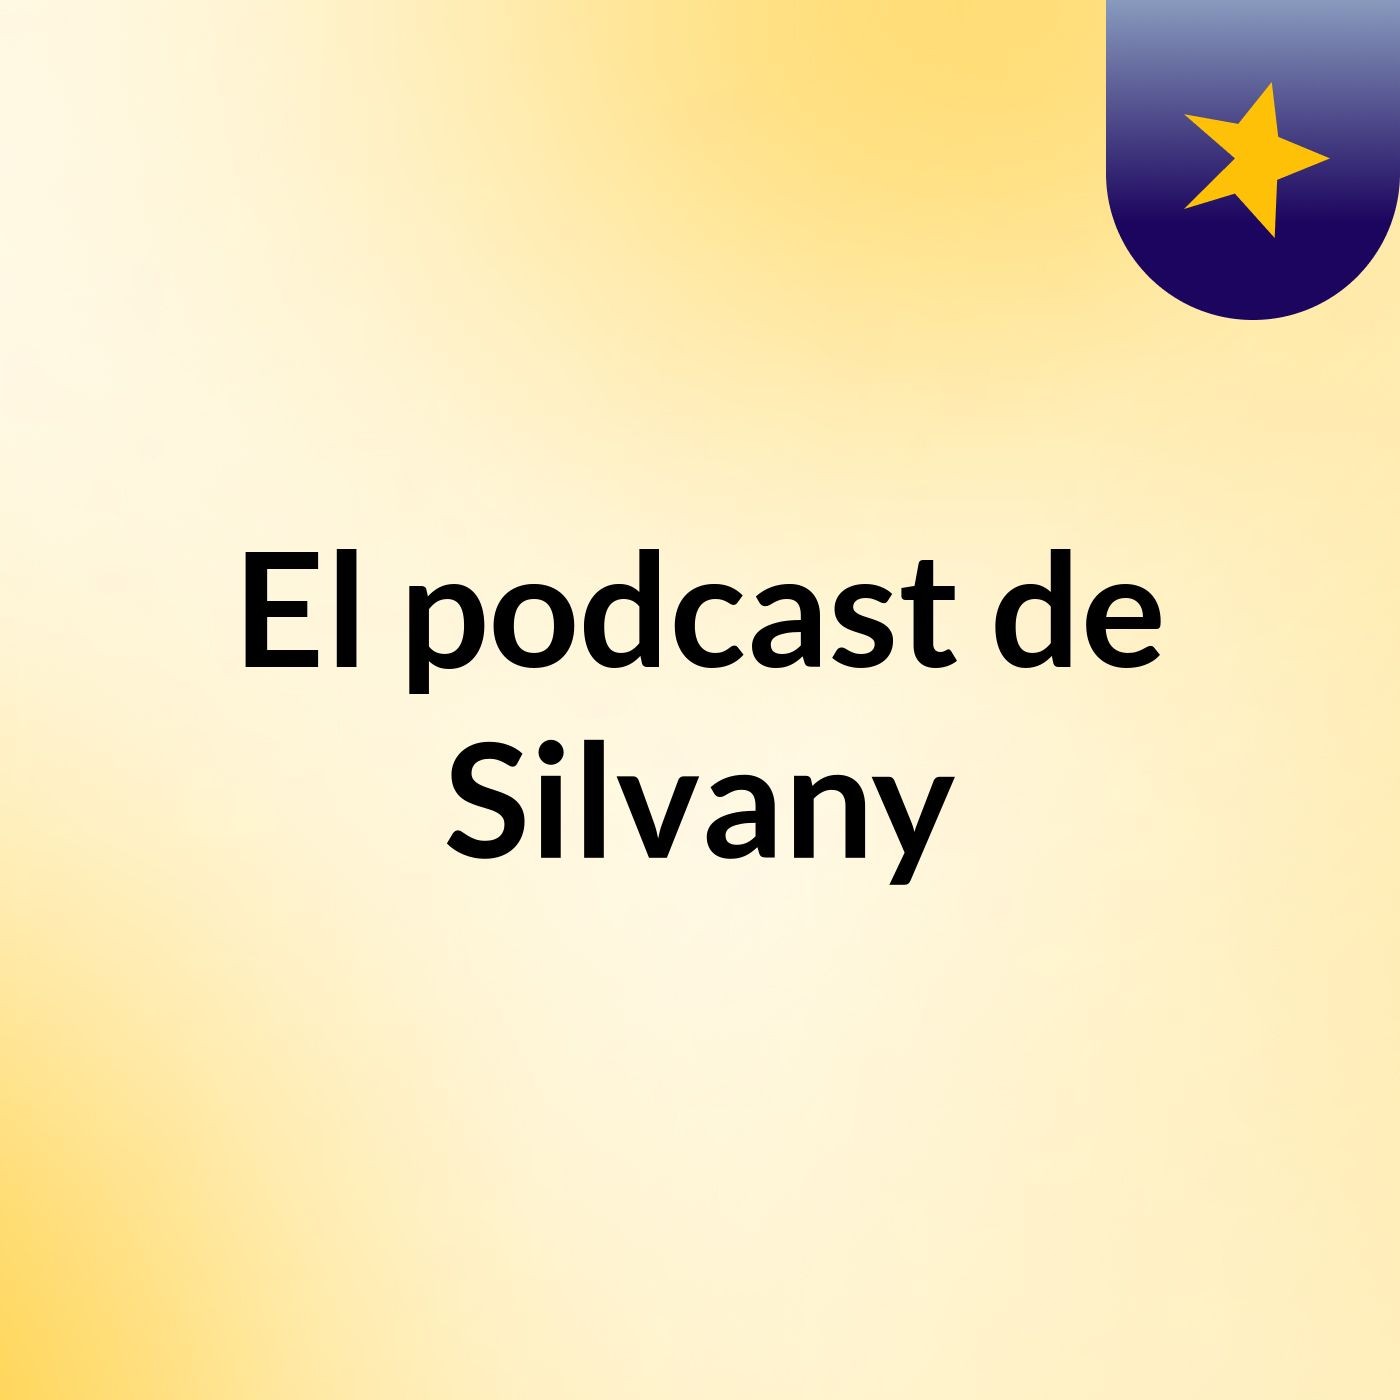 El podcast de Silvany